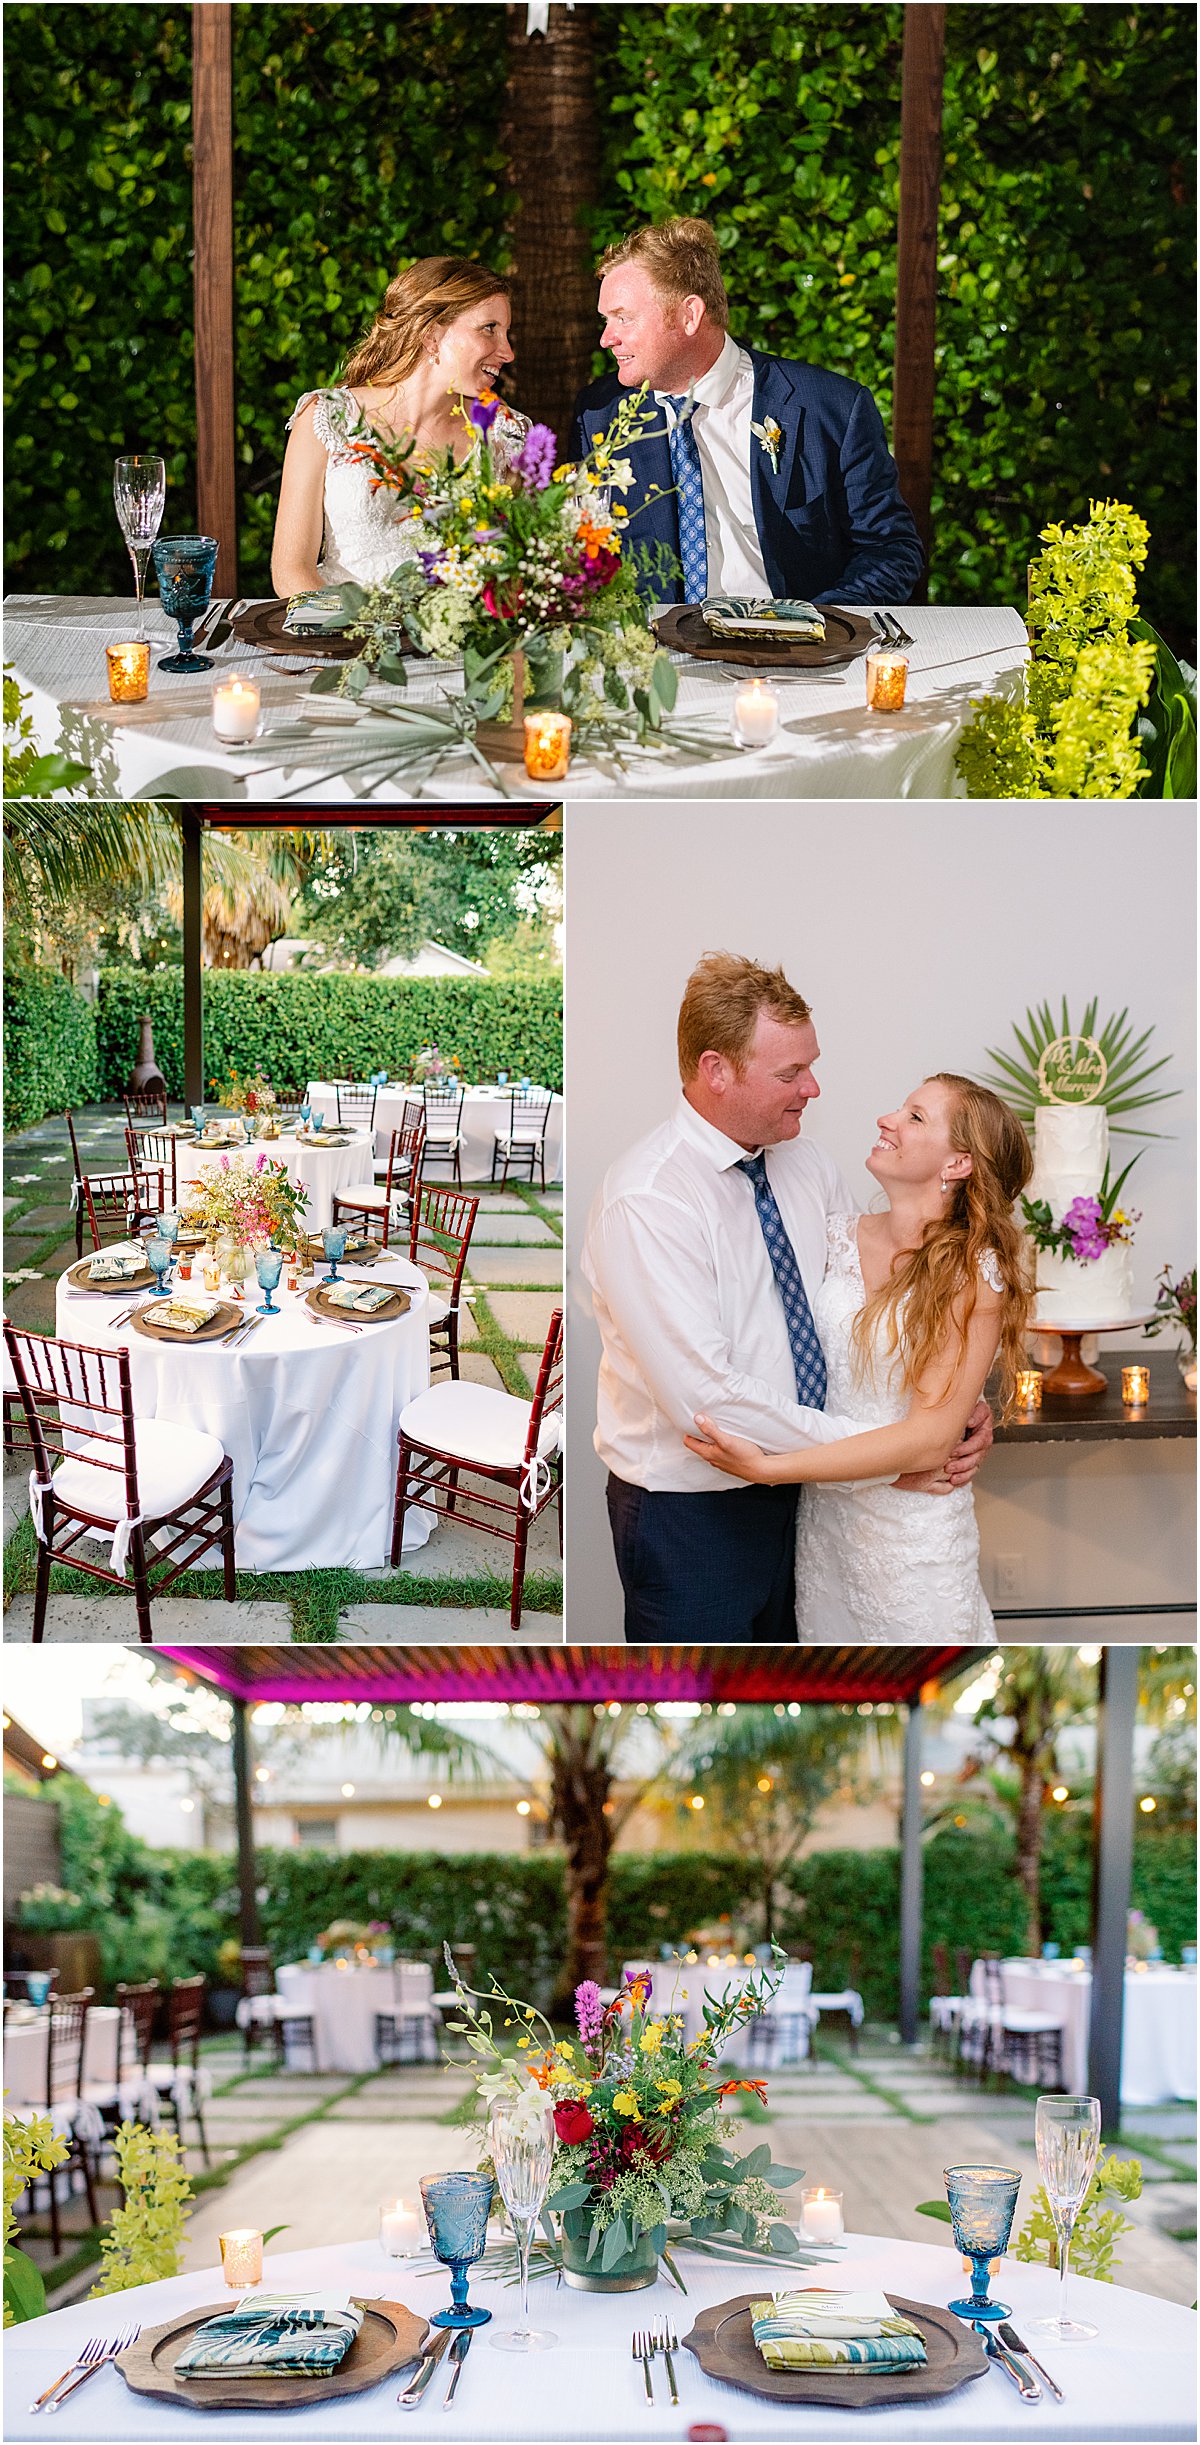 Social House | Top Palm Beach Wedding Venue | Married in Palm Beach | www.marriedinpalmbeach.com | Jessica DeYoung Photography